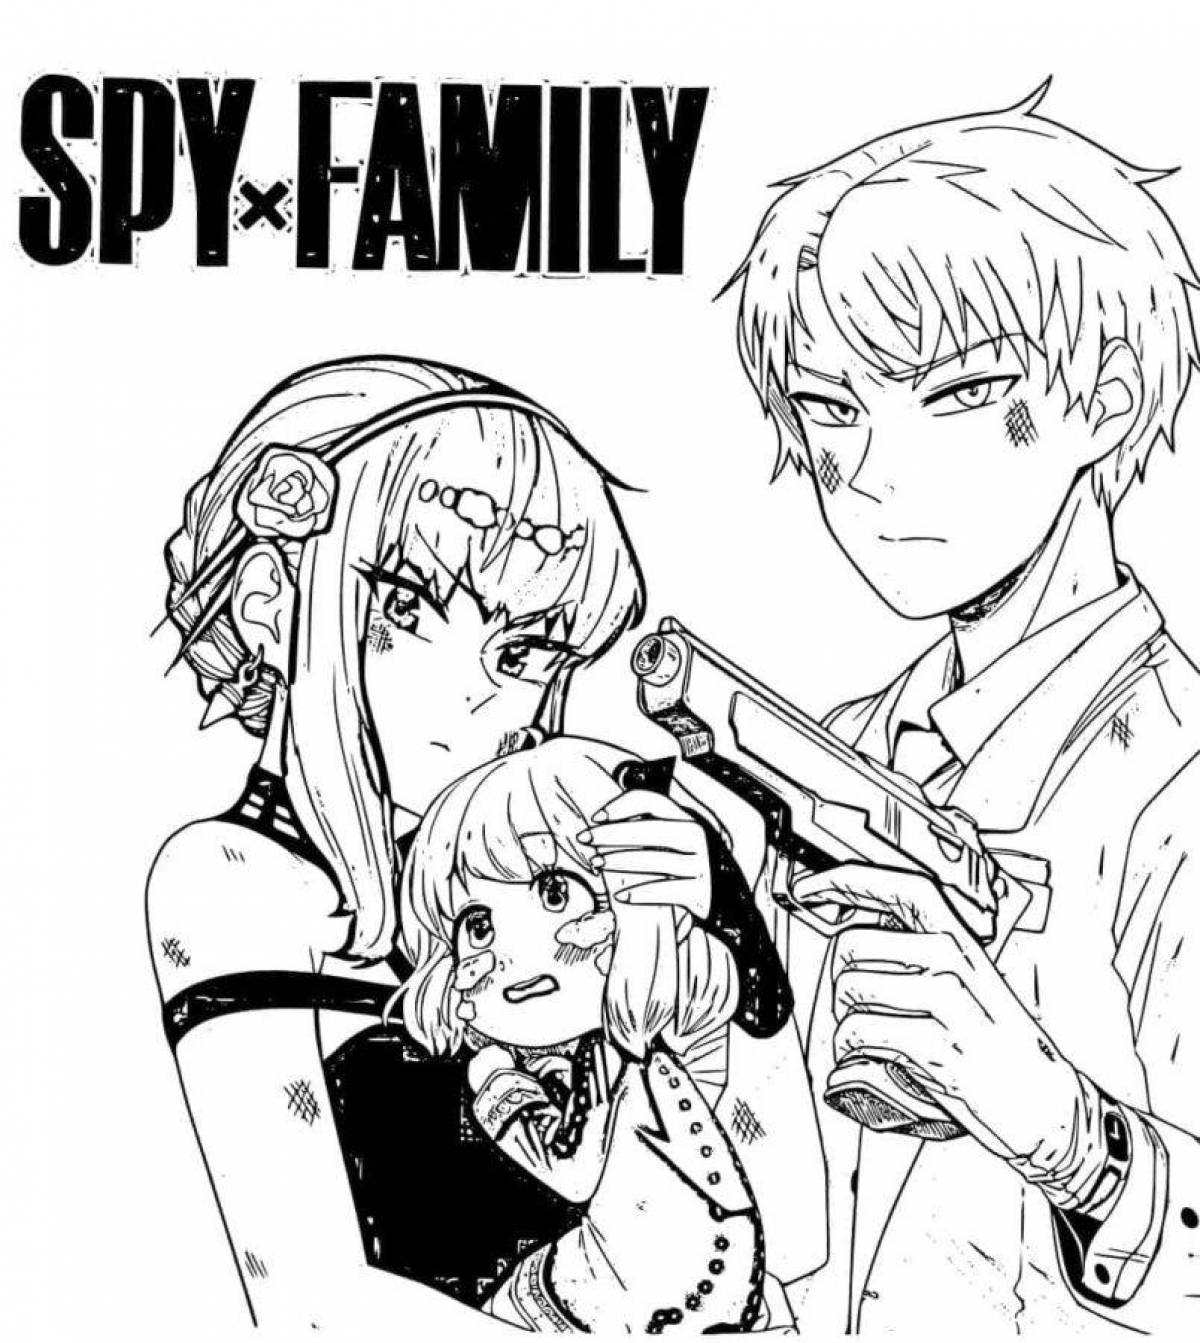 Weird spy family coloring book